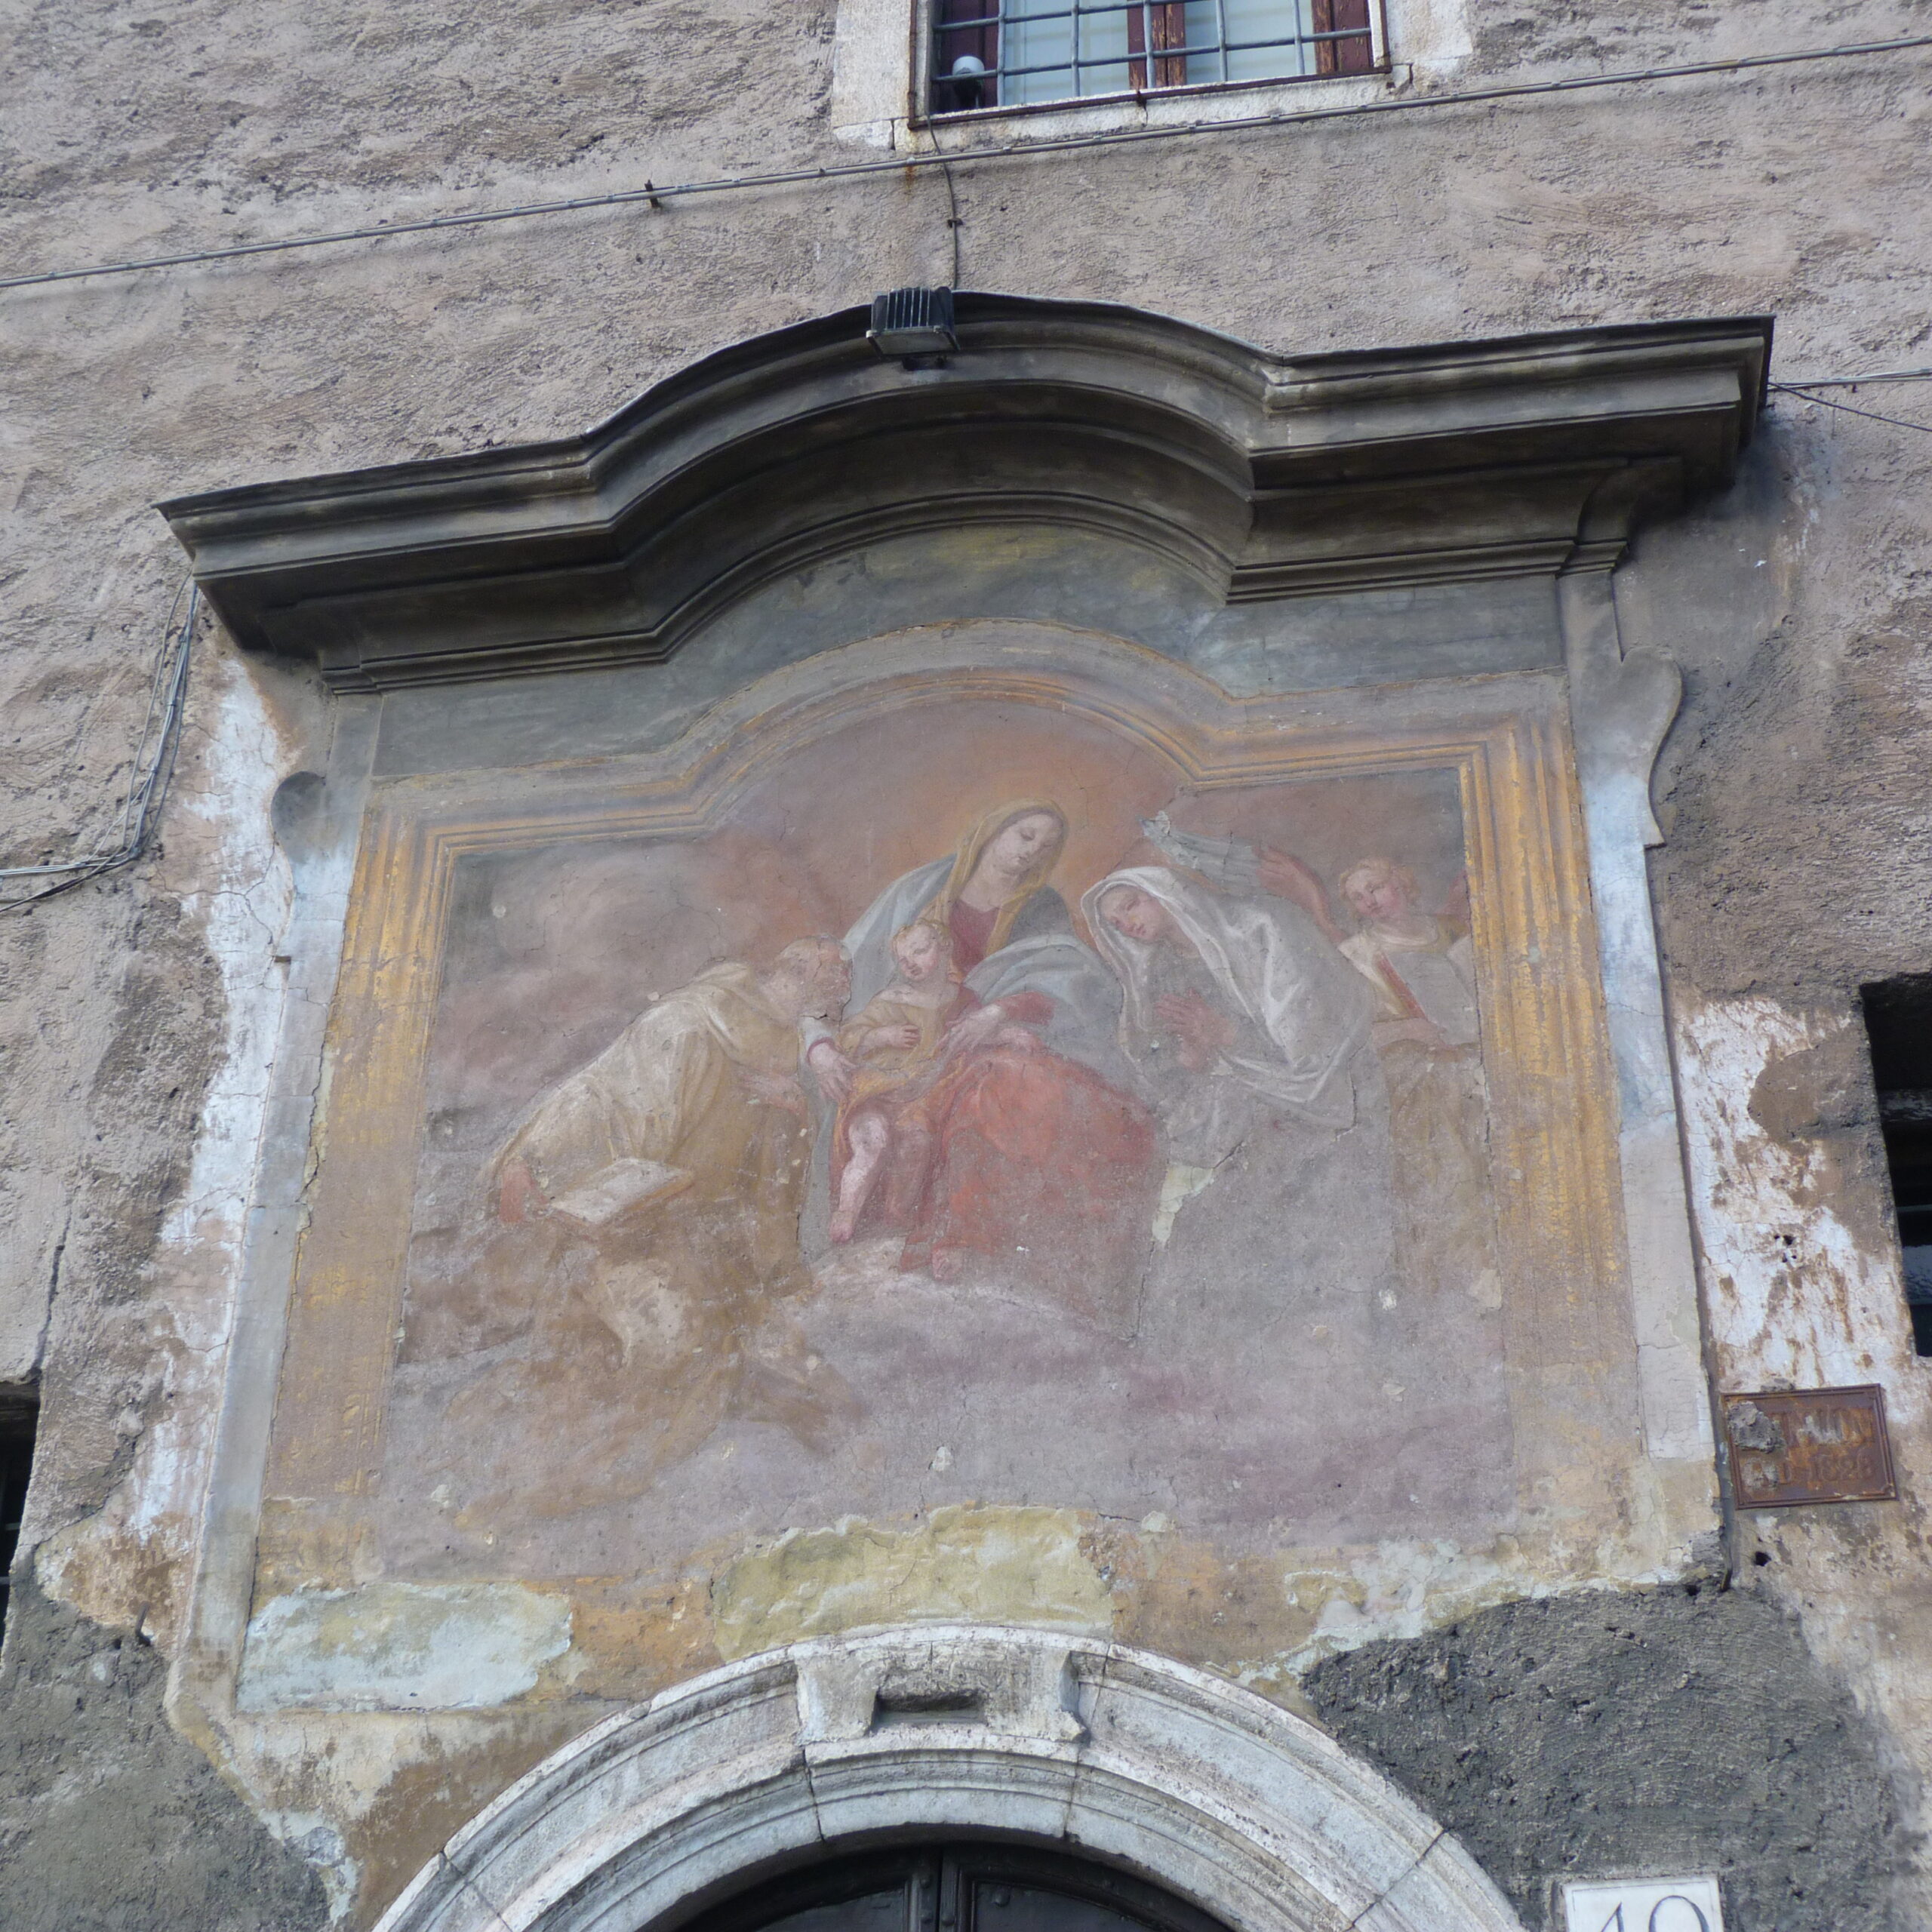 Monastero delle Oblate di Santa Francesca Romana